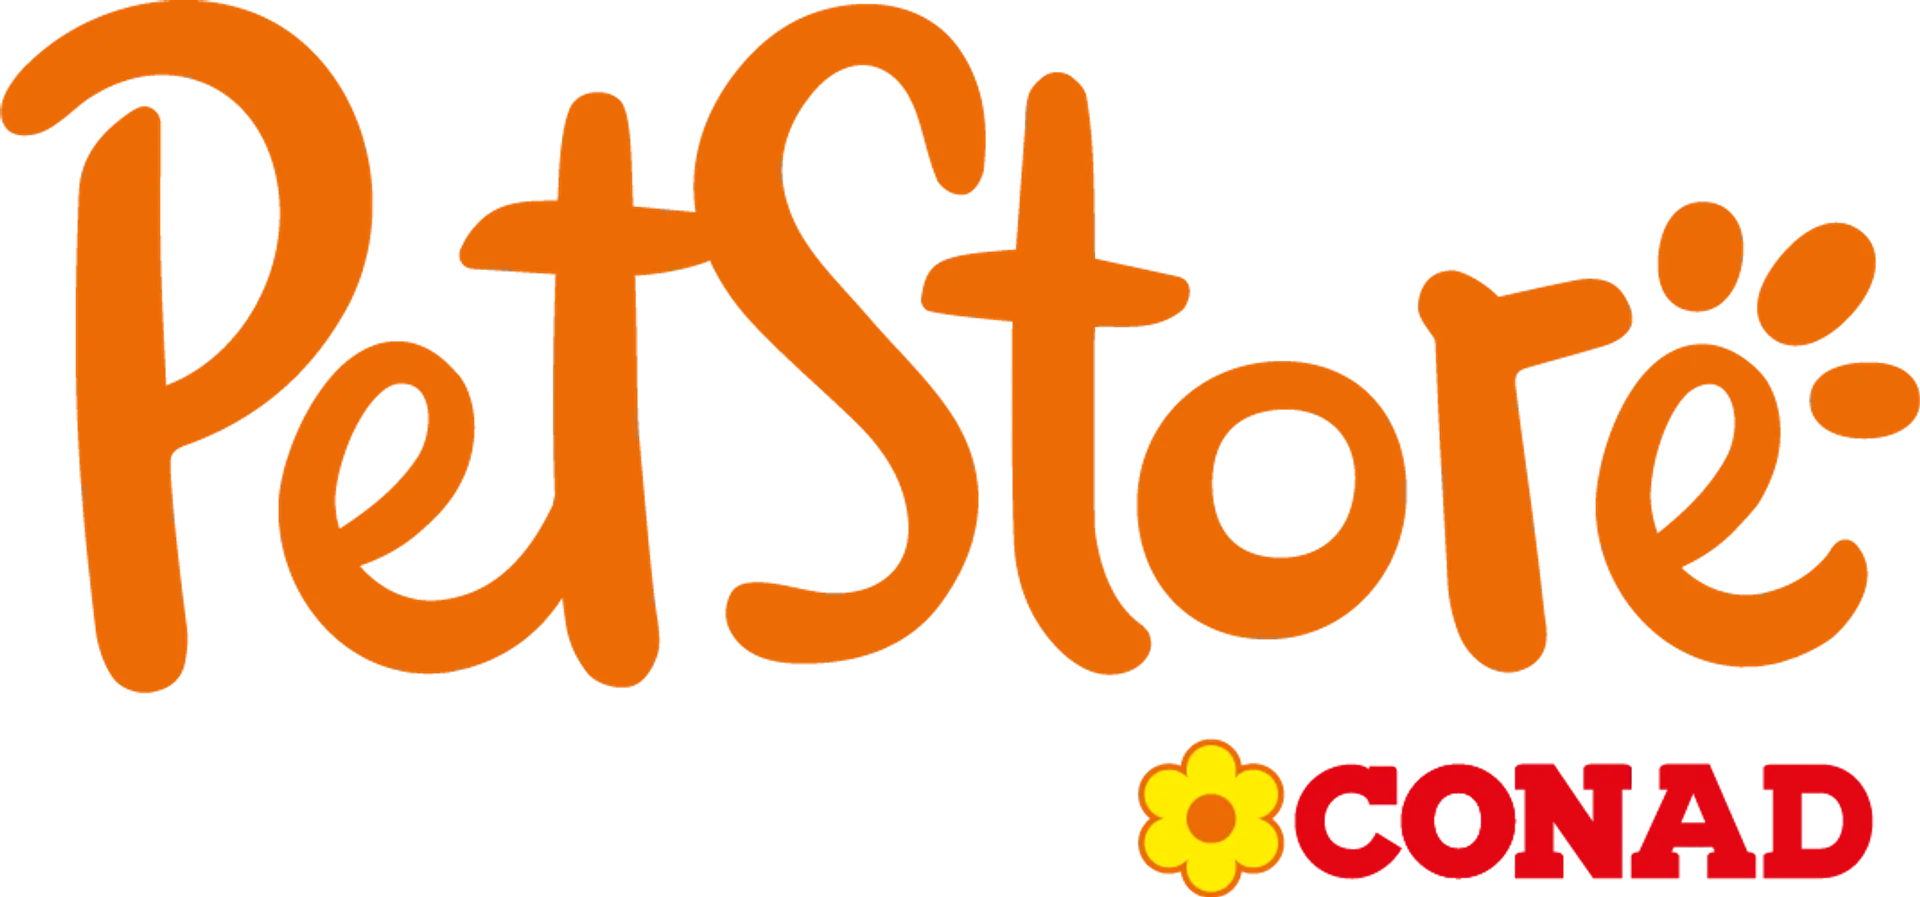 PET STORE CONAD logo